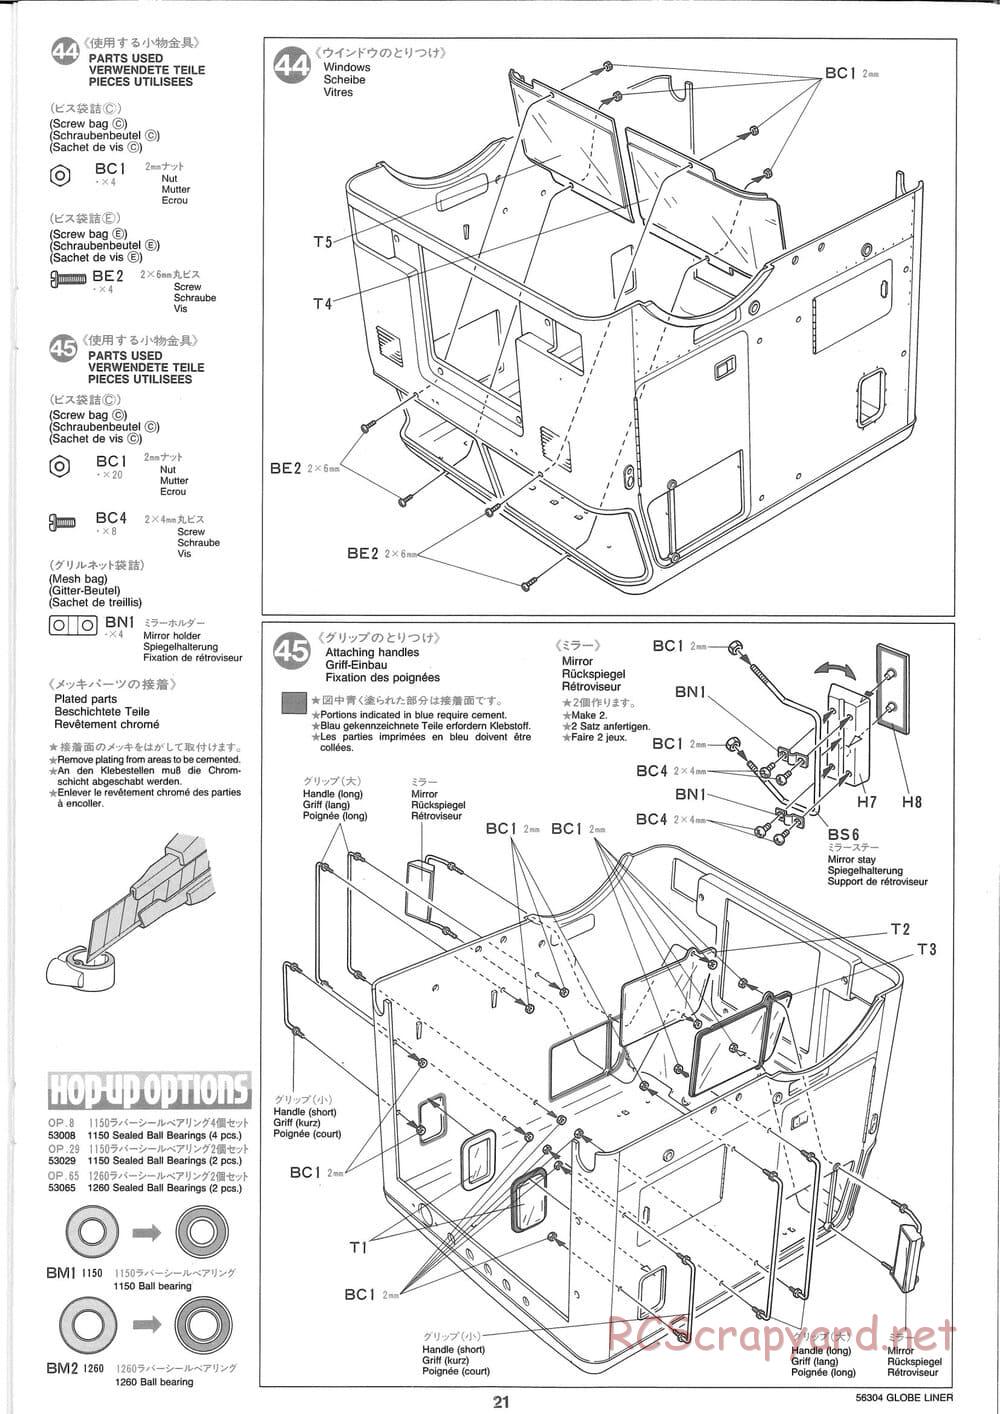 Tamiya - Globe Liner - Manual - Page 21